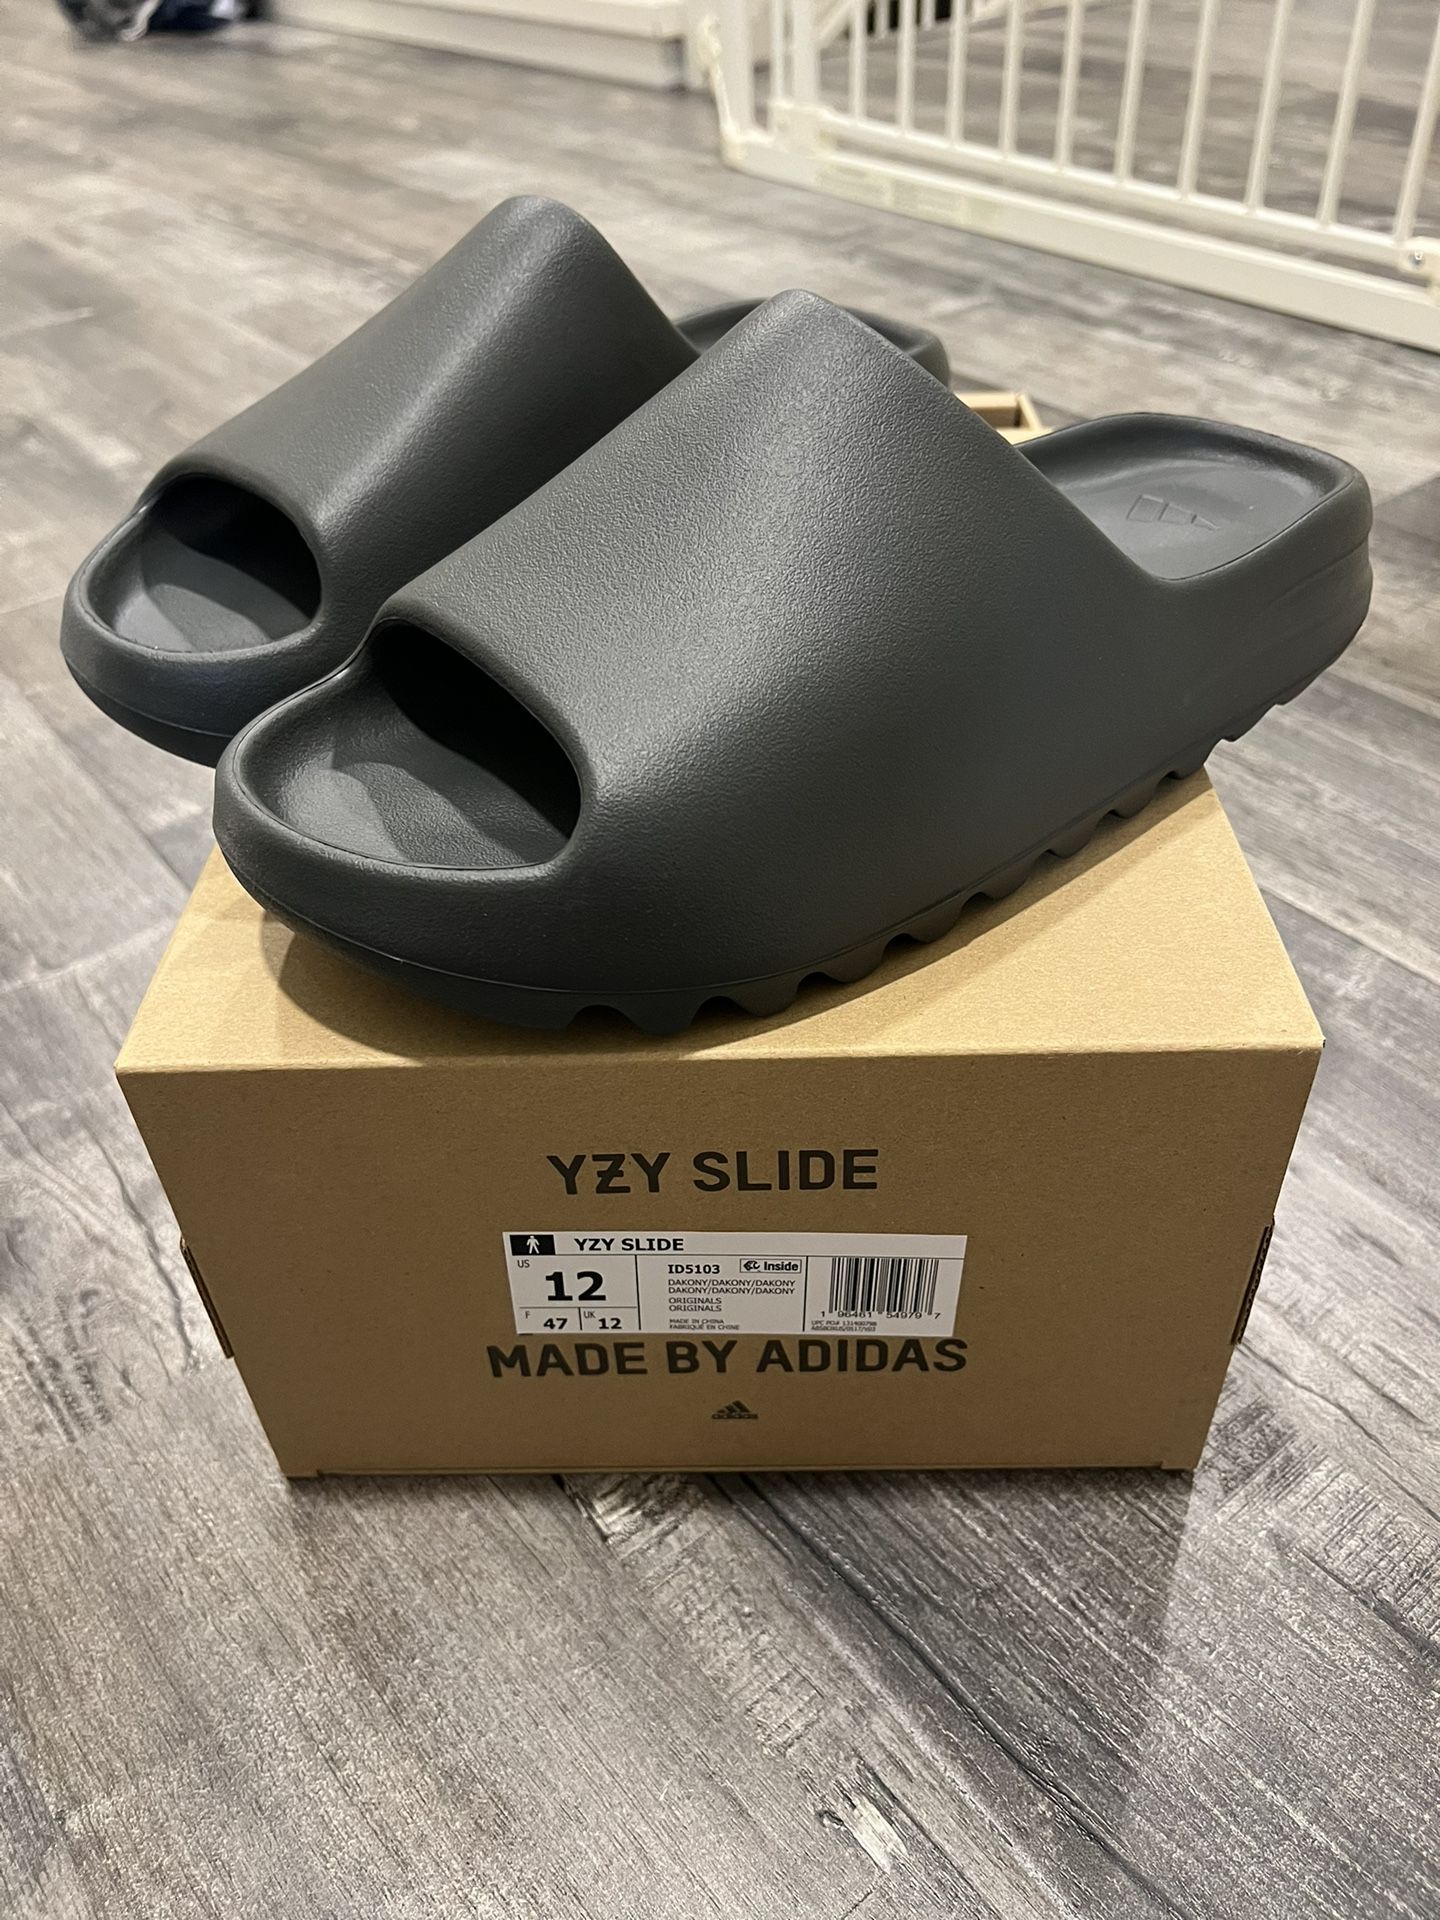 (Size 12) Adidas Yeezy Slide, Dark onyx